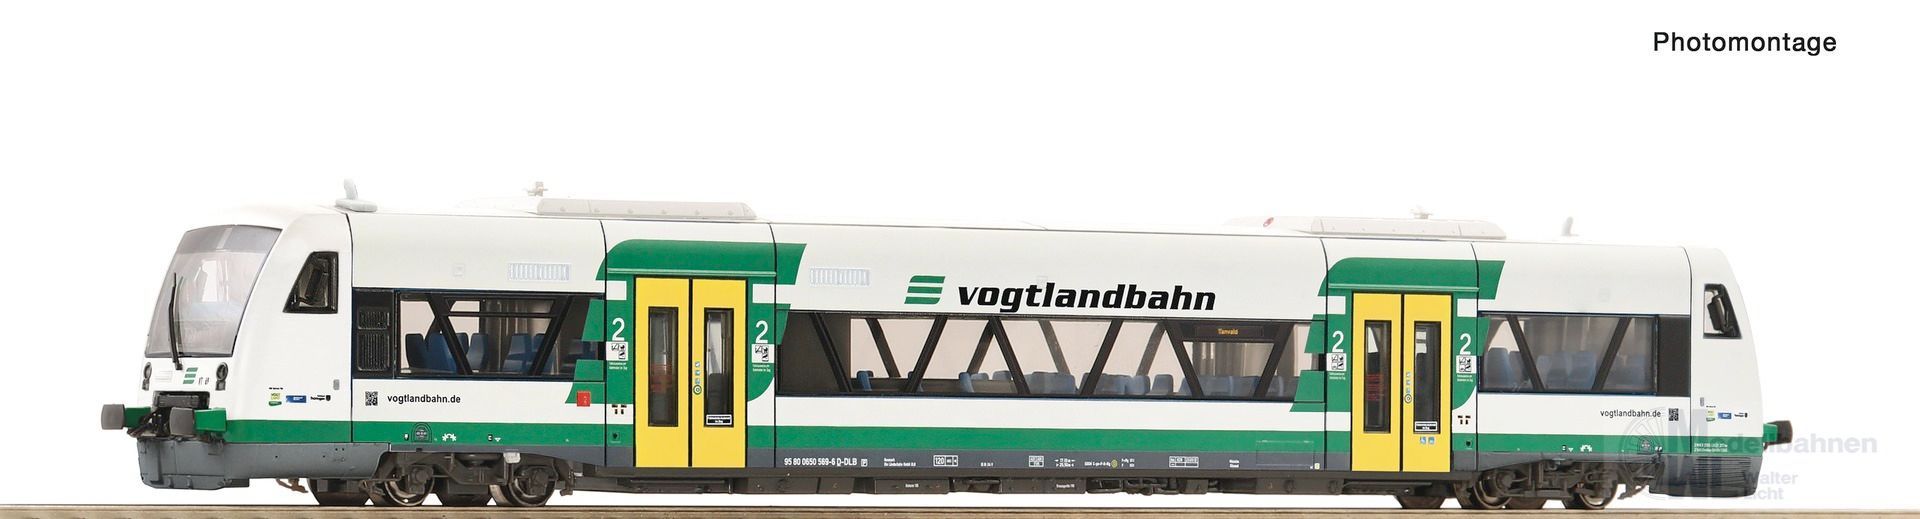 Roco 7790003 - Dieseltriebwagen RS1 Vogtlandbahn Ep.VI TT 1:120 Sound